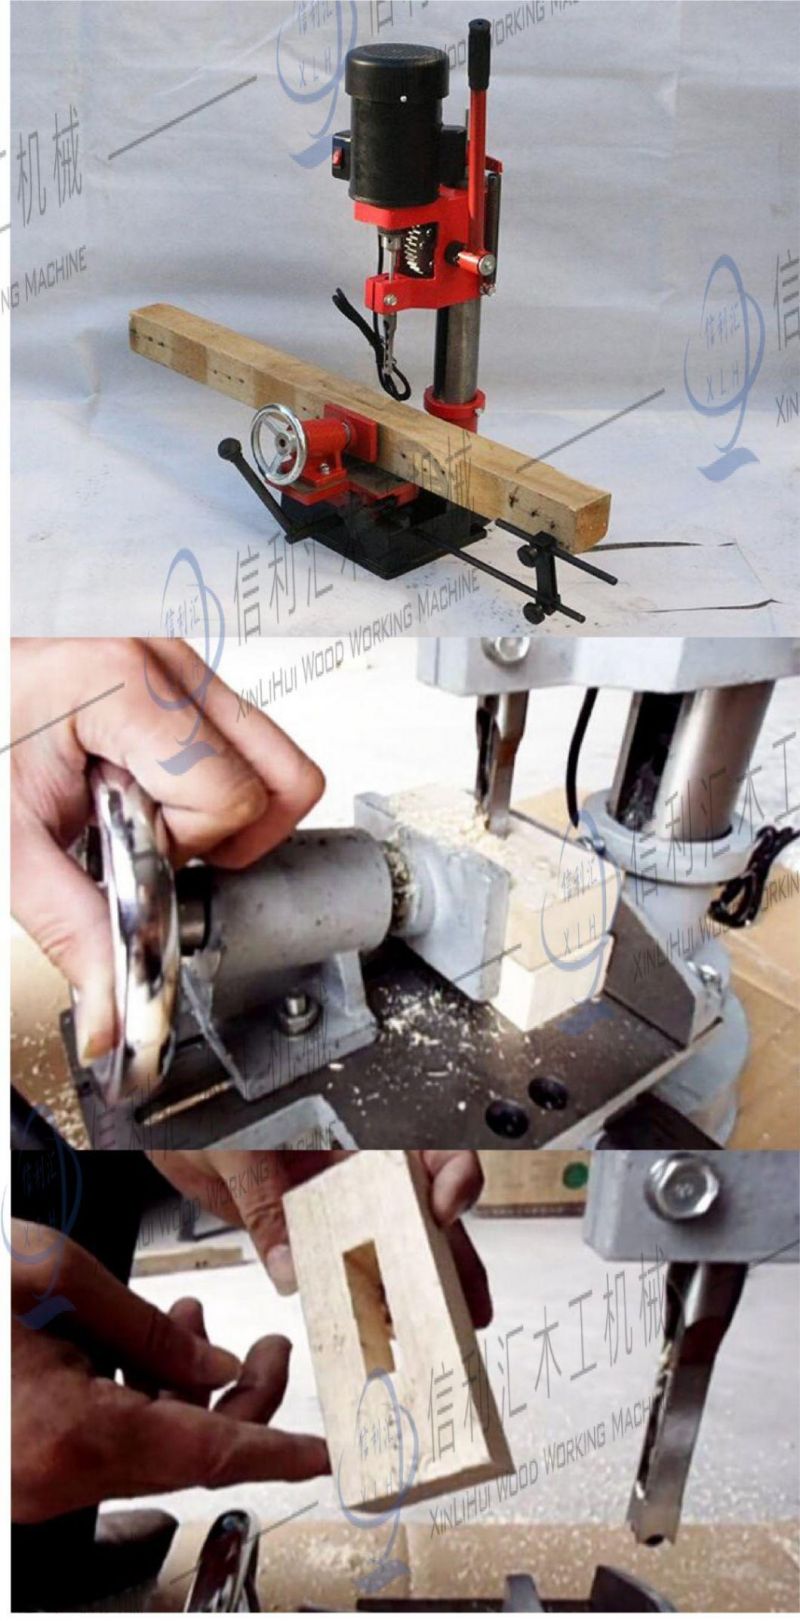 Mortise Machine Hollow Benchtop Manuel Wood Slot Drilling Machine Mortising Machine for Wood Manuel Wood Mortising Machine for Wood, Delta Mortising Kit